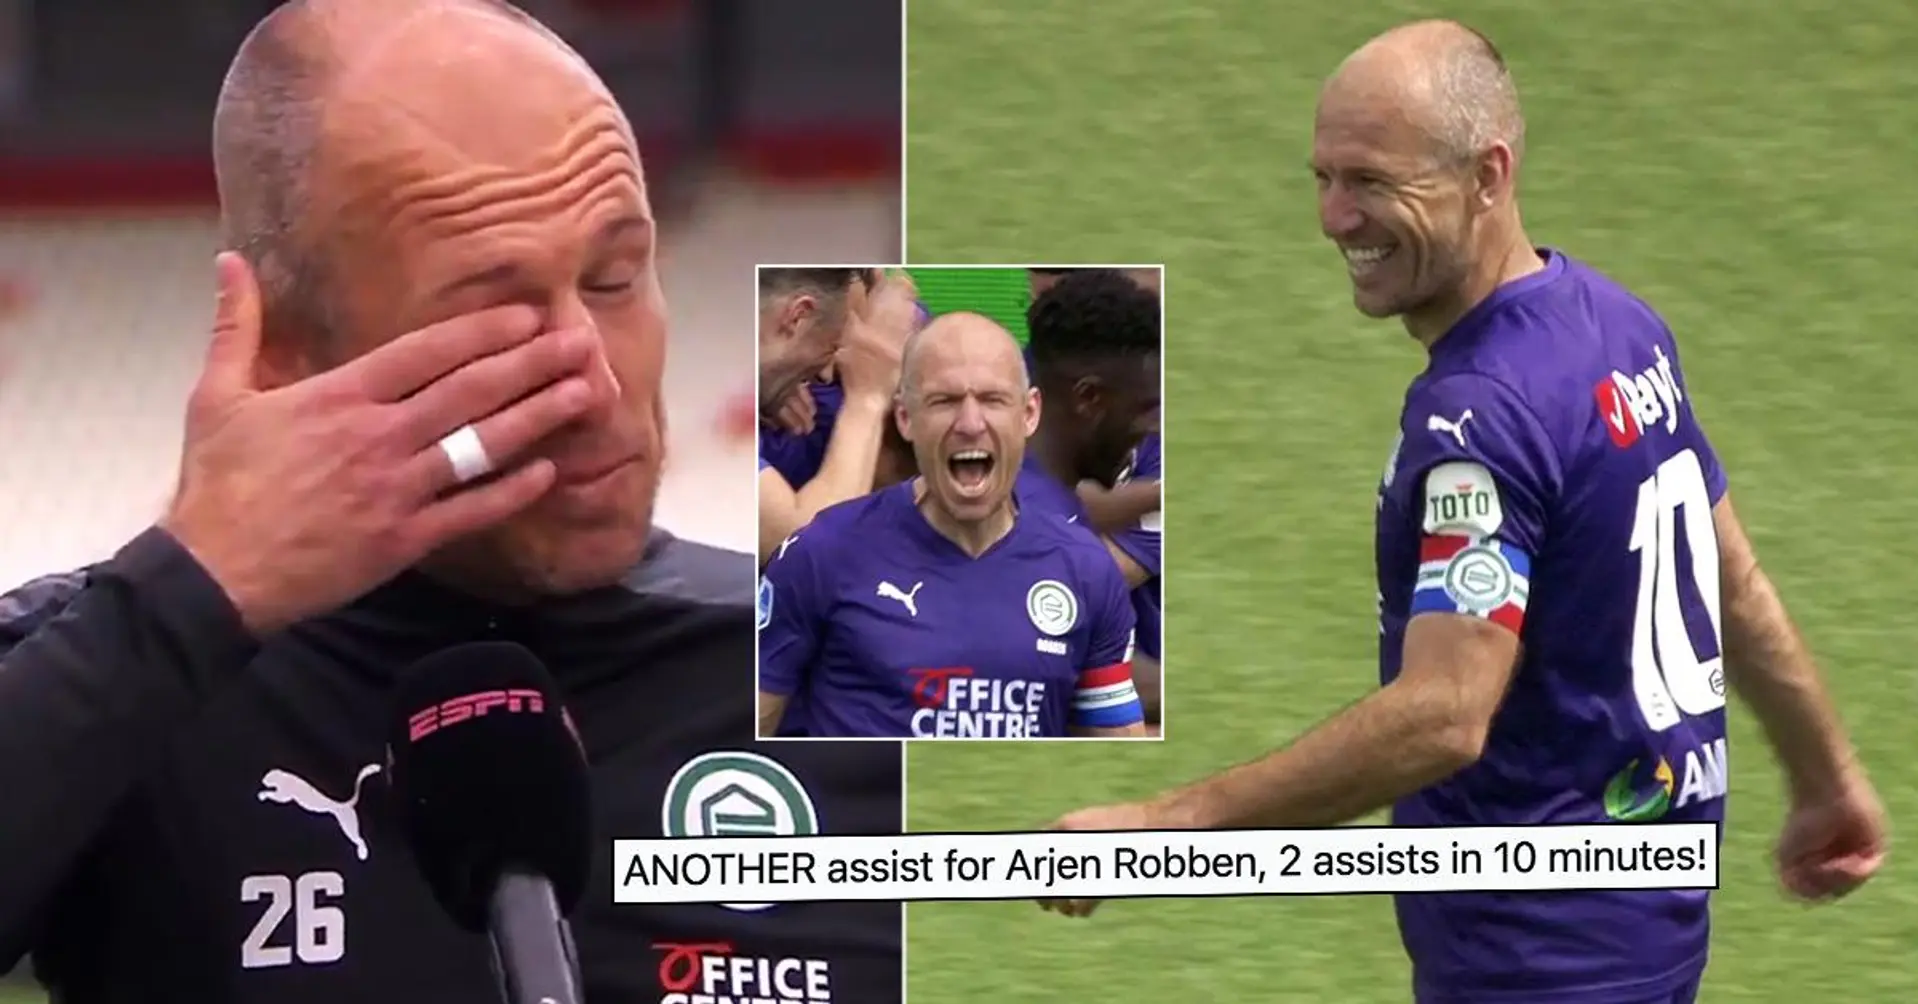 Arjen Robben weint vor der Kamera, nachdem er auf den Platz zurückgekehrt ist und nach der EM 2021 gefragt wurde